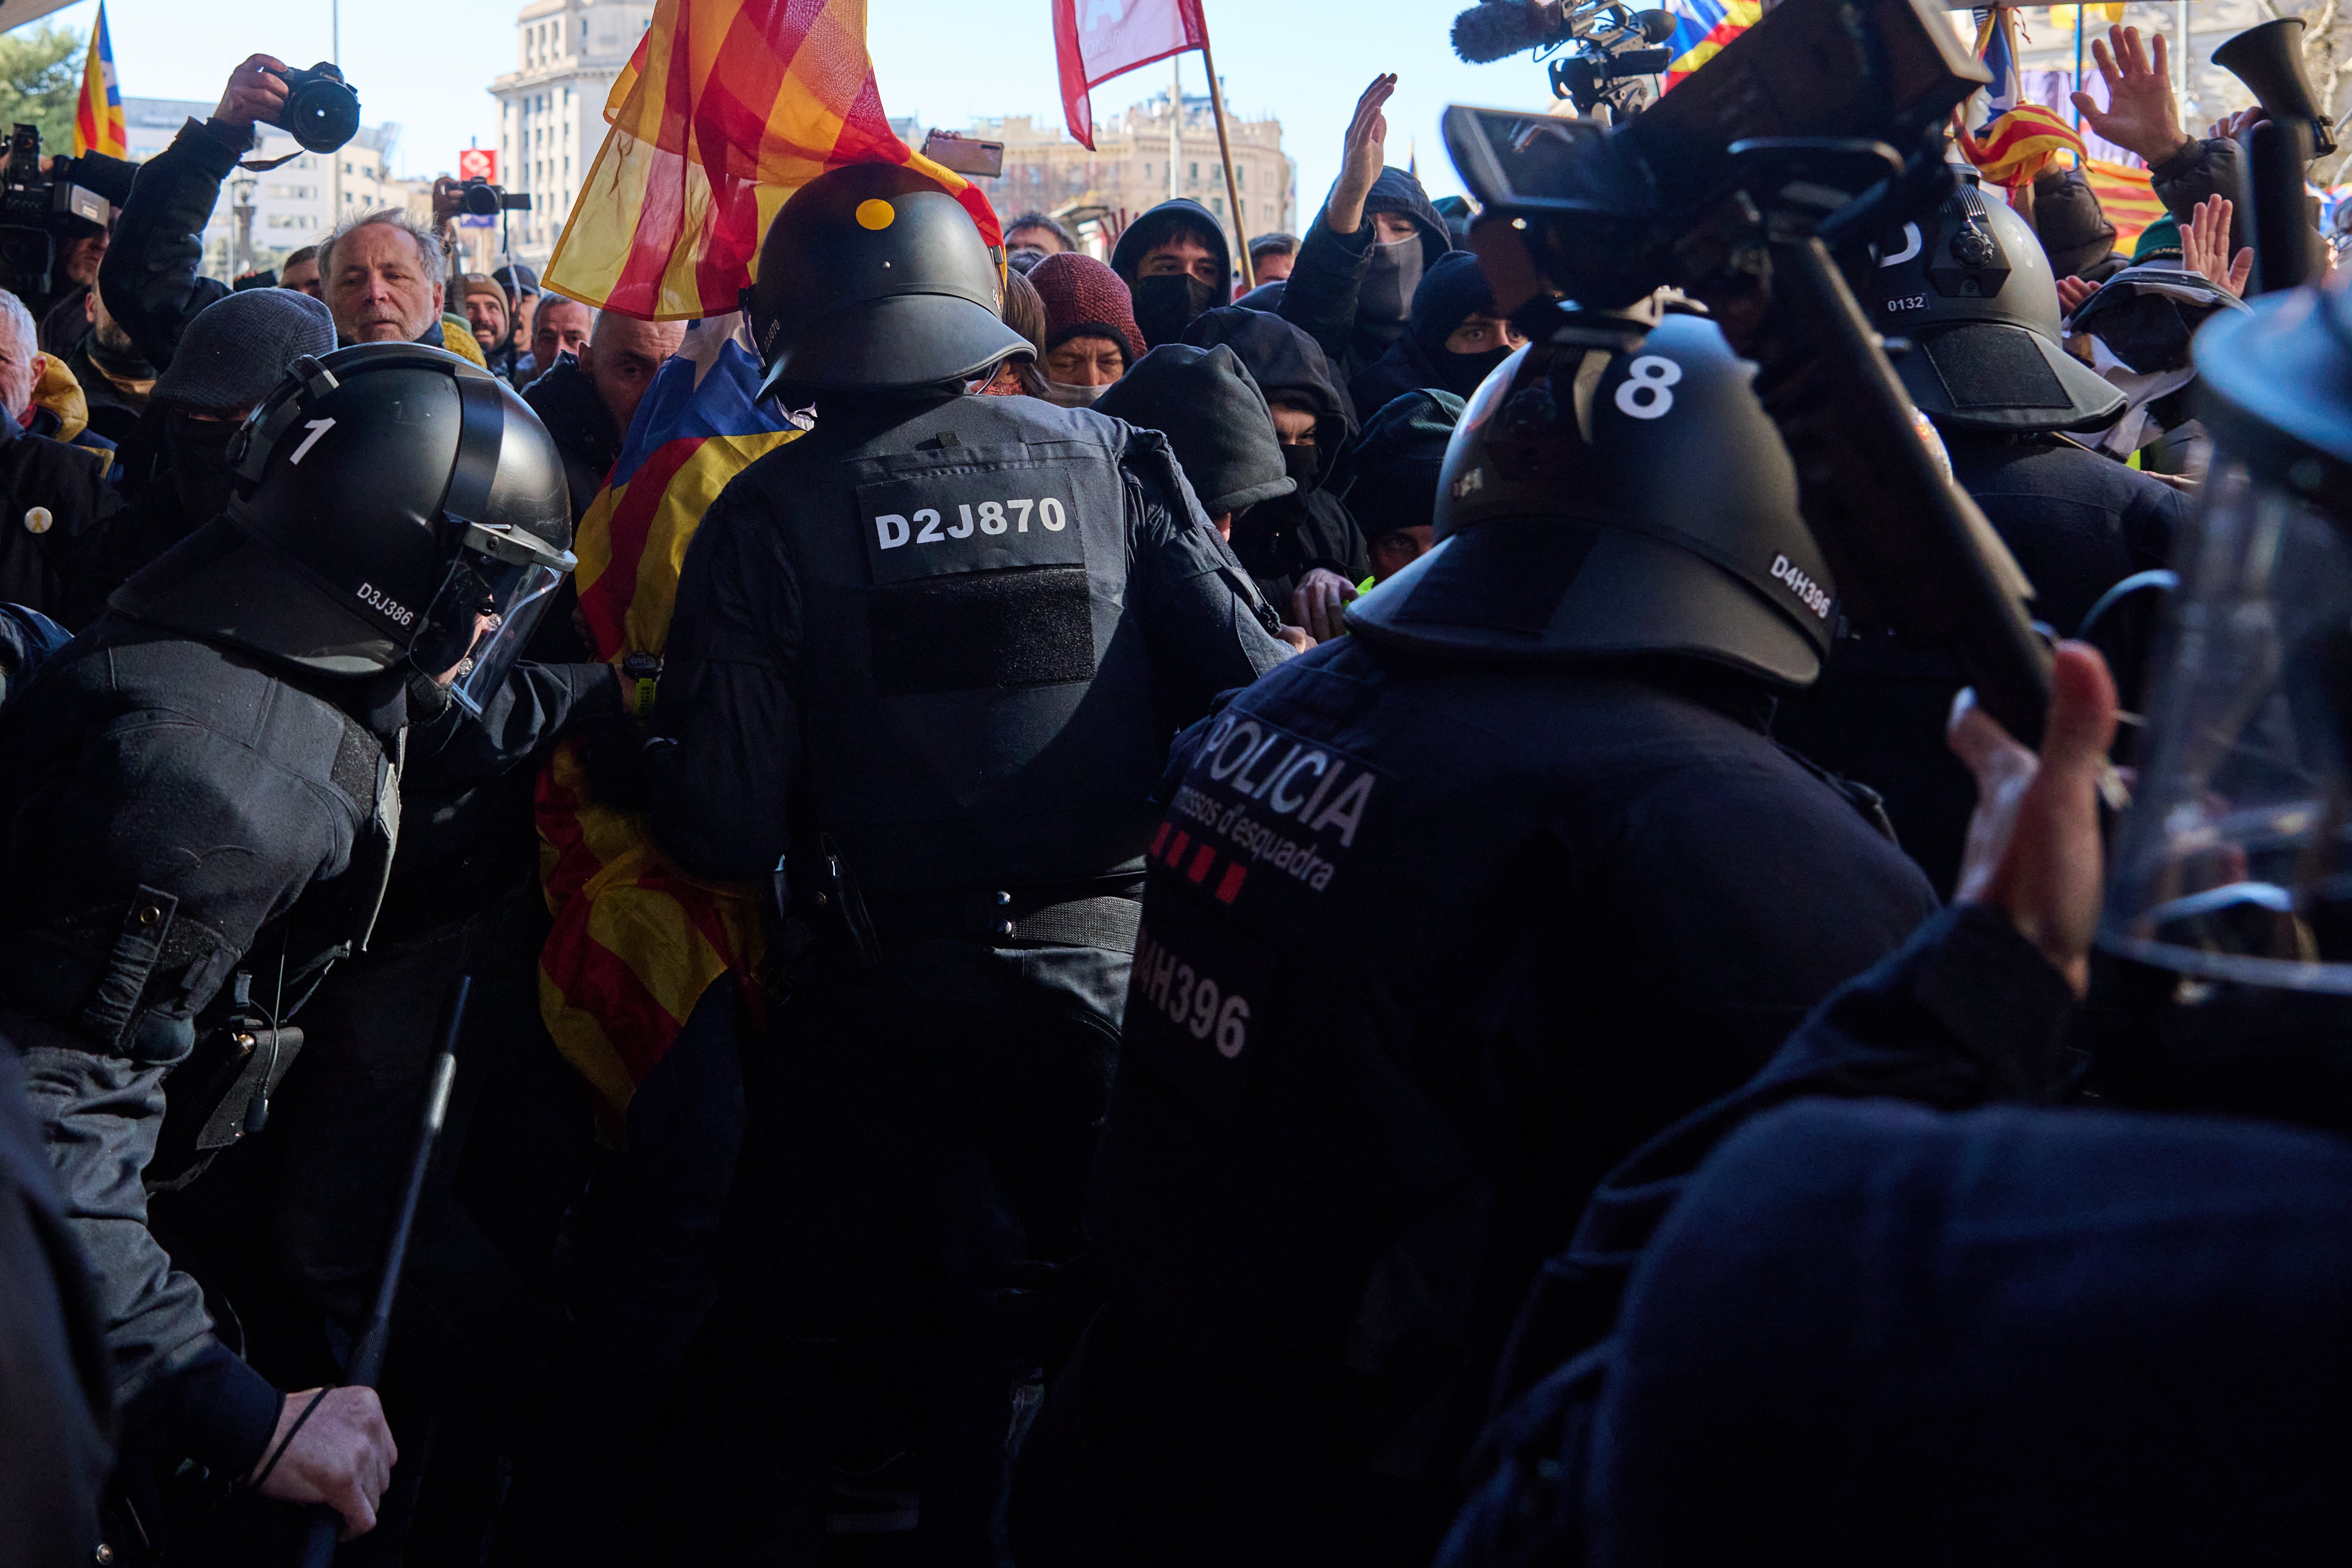 Interior archiva la denuncia a un ciudadano que grabó a un mosso golpeando al exdiputado Josep Costa